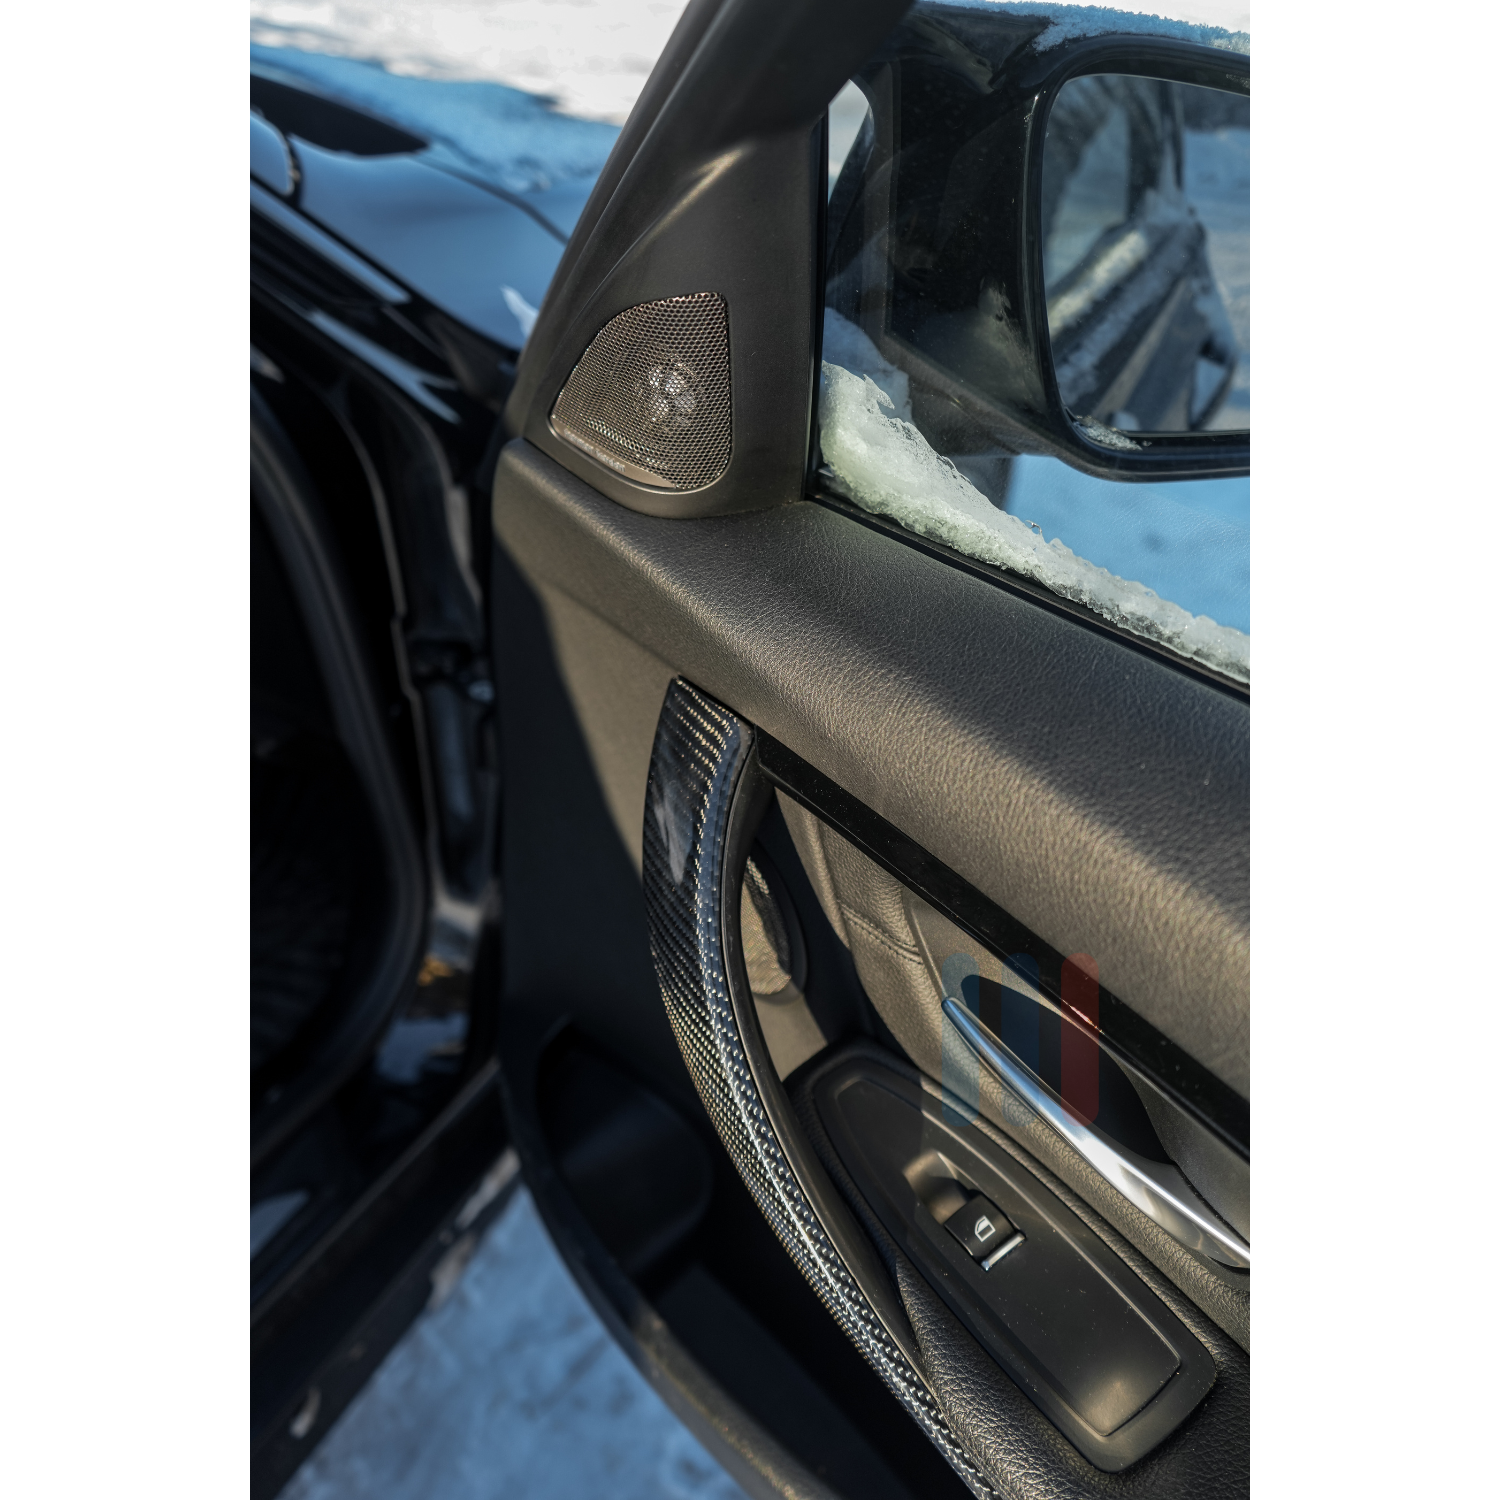 BMW F3x/F8x Karbon Interiør Trim Kit